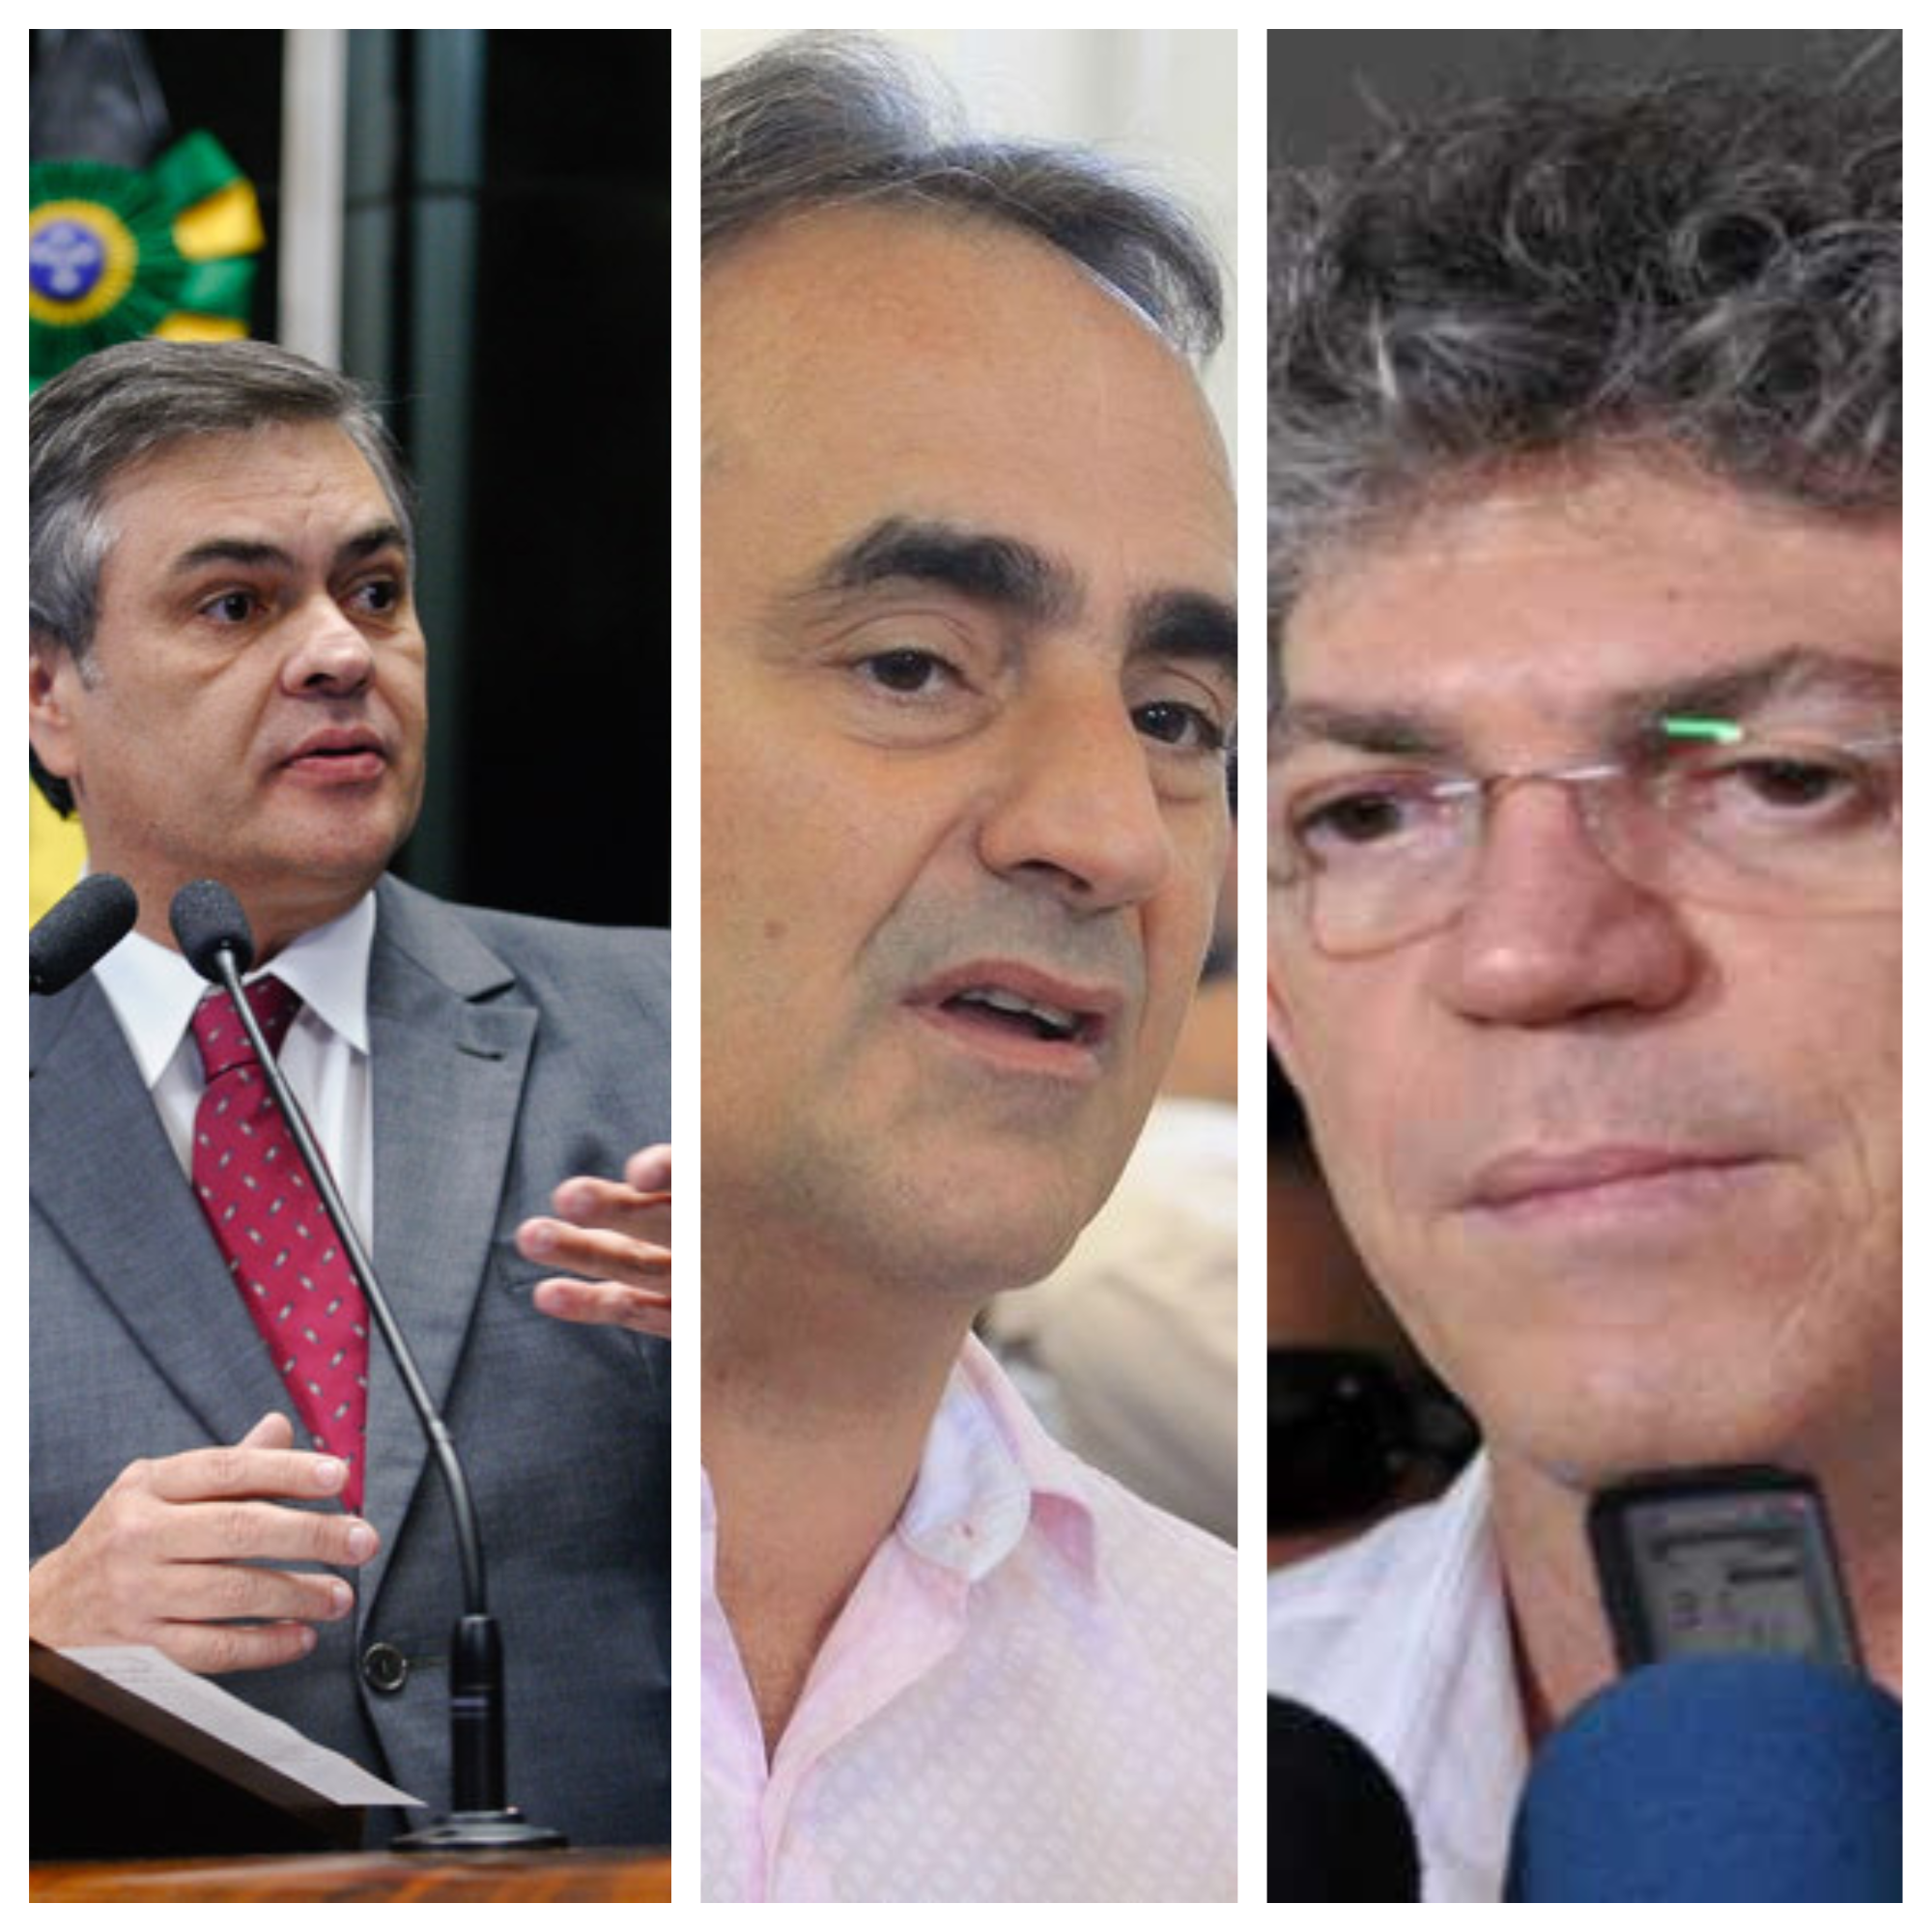 DESCONFIANÇA: Com quem irá ficar o prefeito Luciano Cartaxo nas eleições 2018, com Cássio ou com Ricardo?